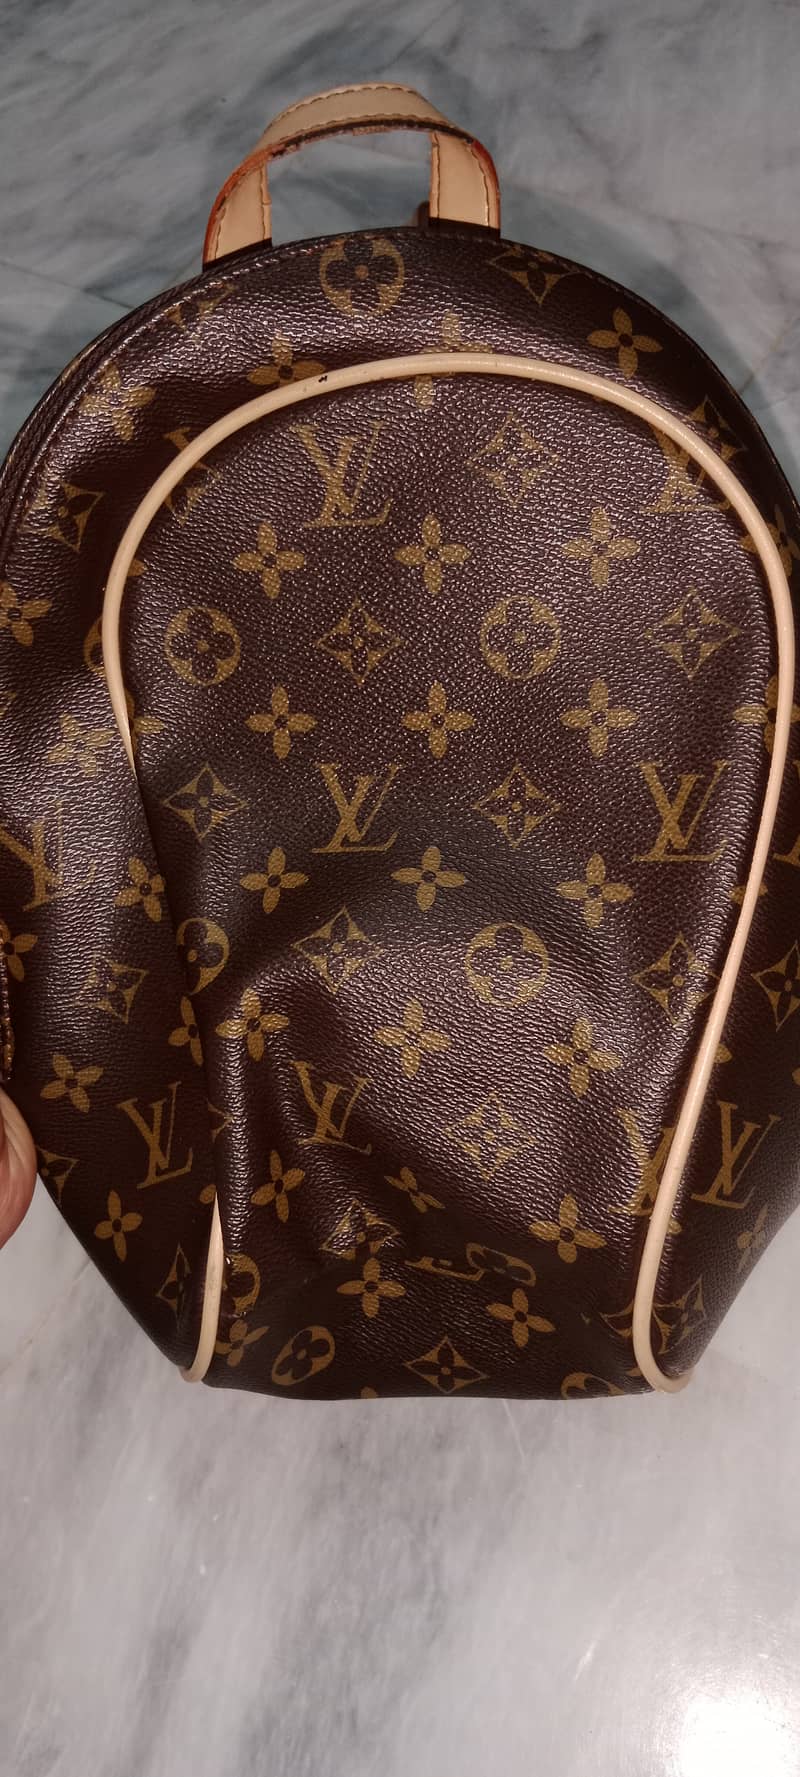 Louis Vuitton bag 2